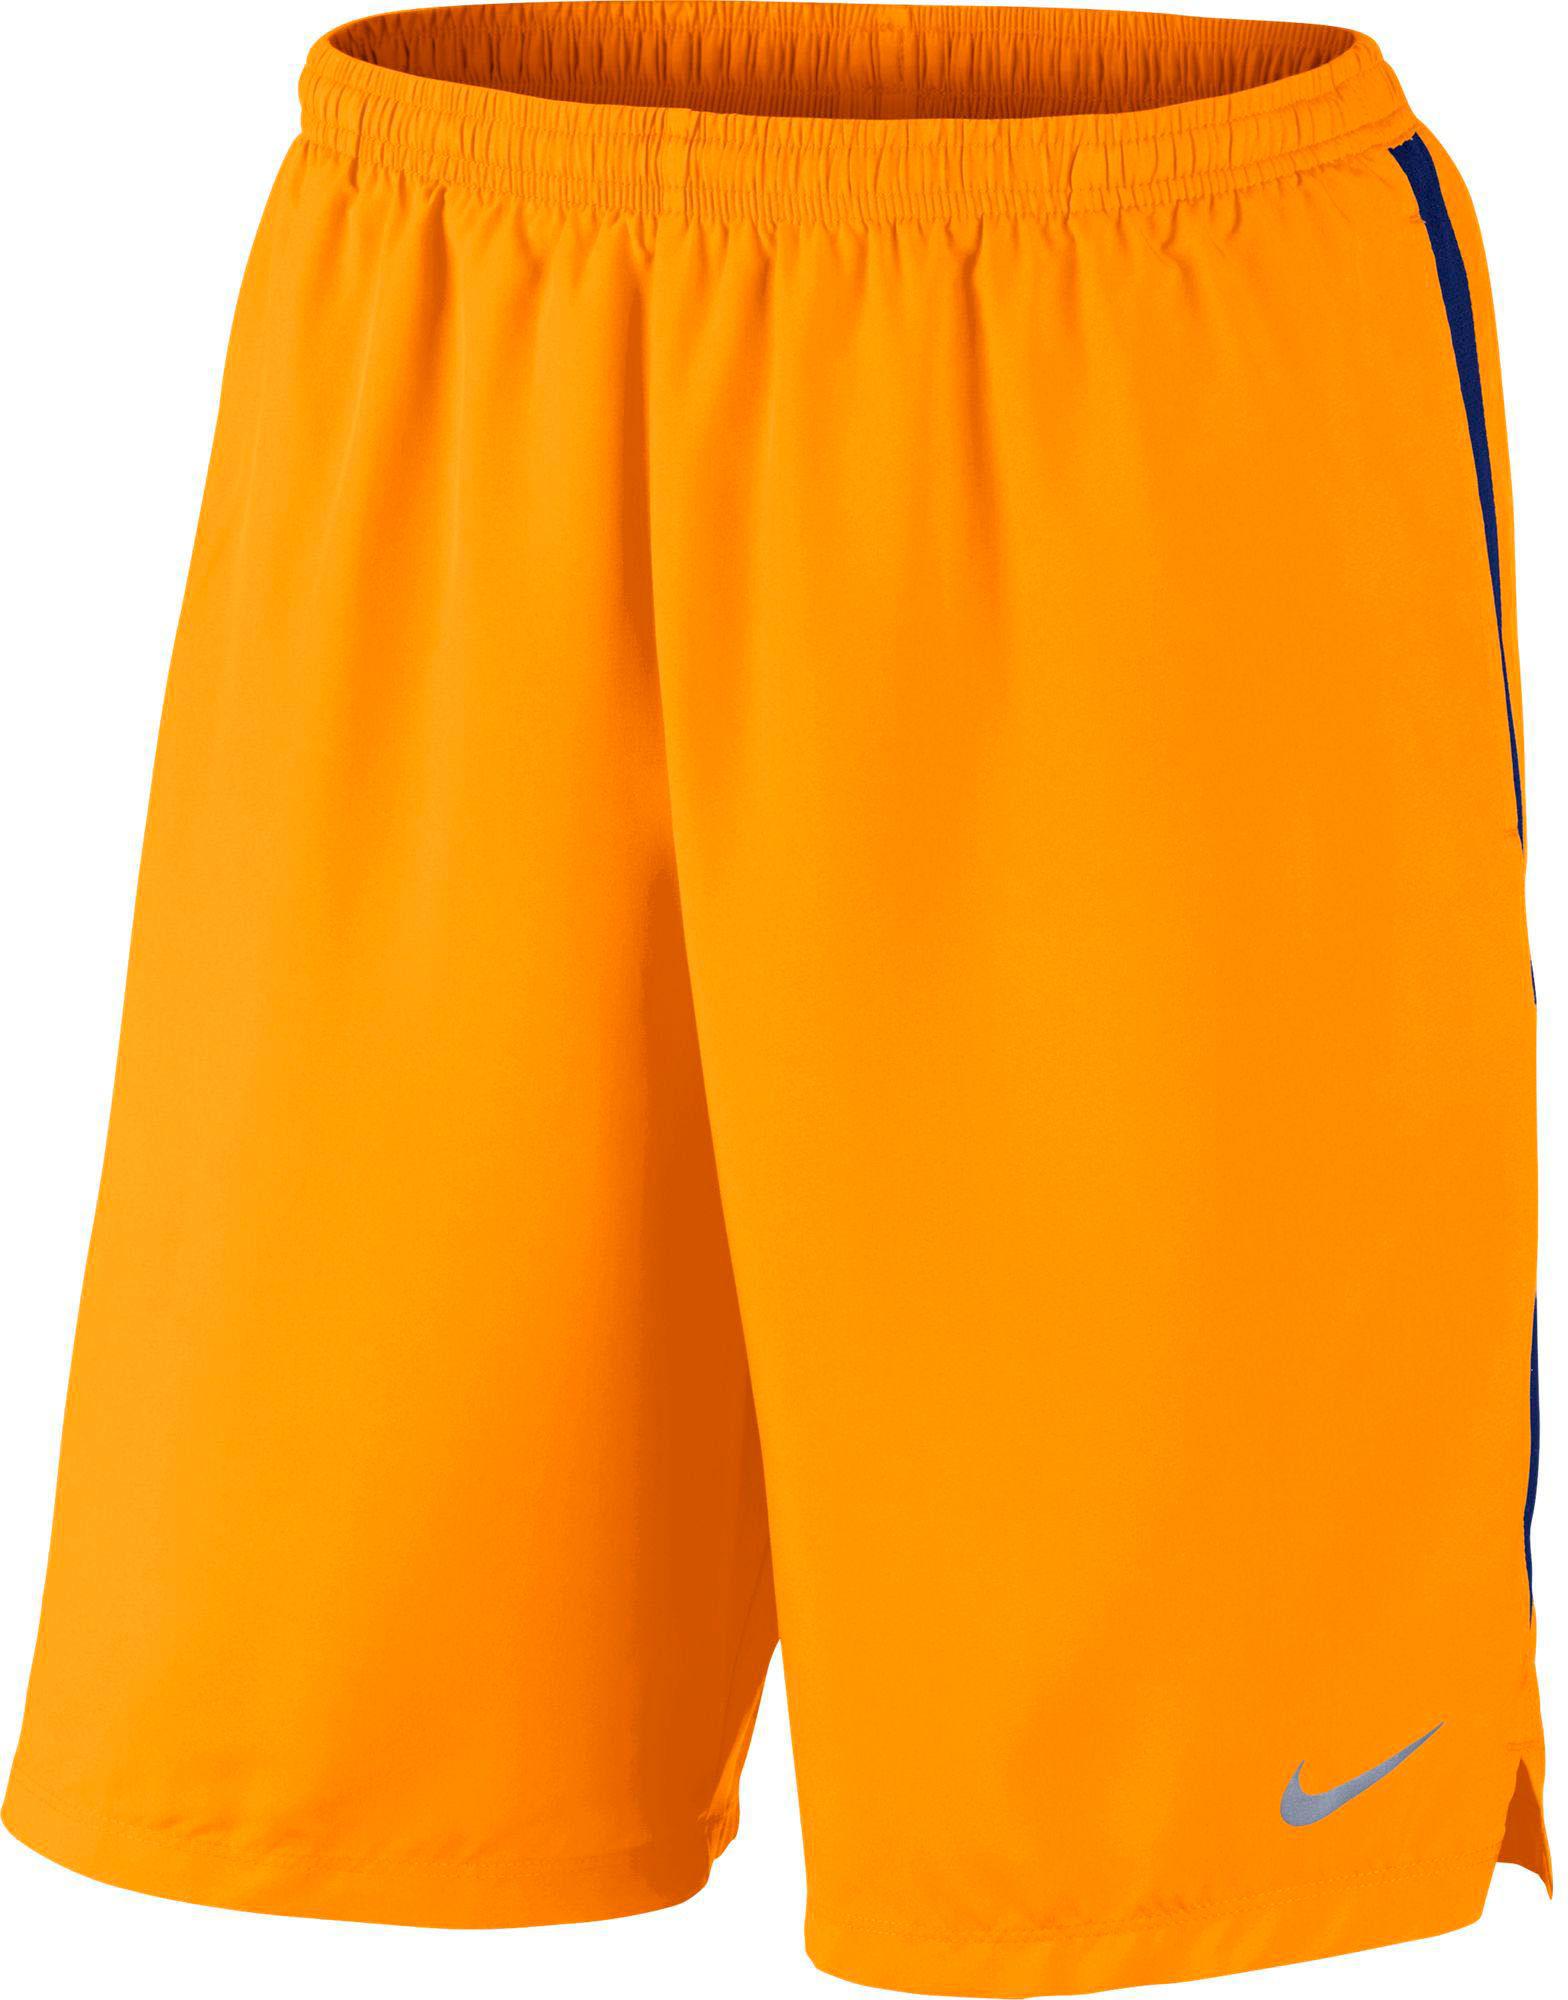 orange and white nike shorts